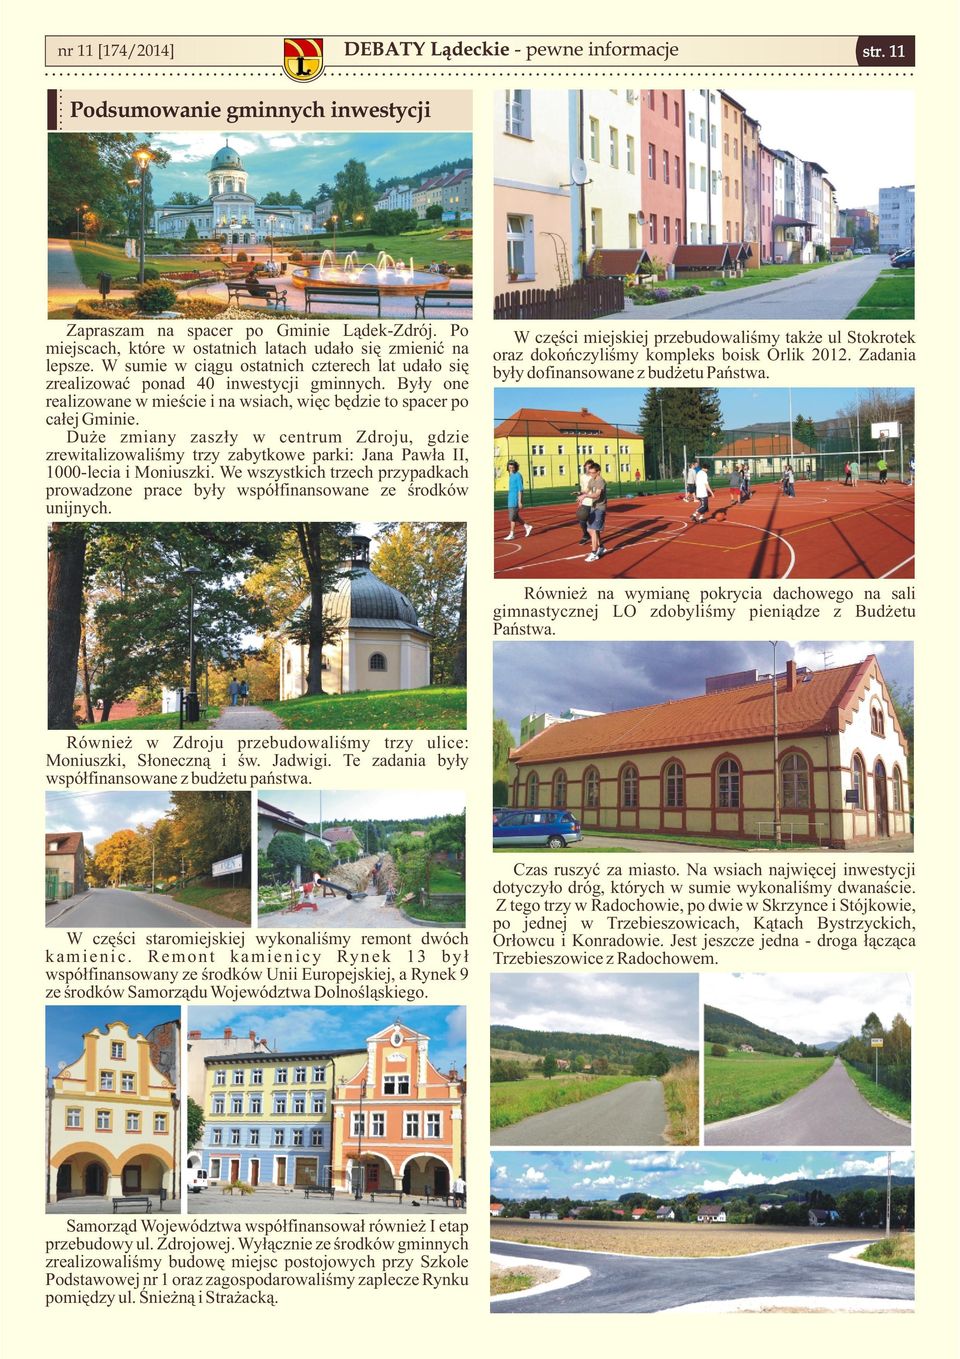 Duże zmiany zaszły w centrum Zdroju, gdzie zrewitalizowaliśmy trzy zabytkowe parki: Jana Pawła II, 1000-lecia i Moniuszki.